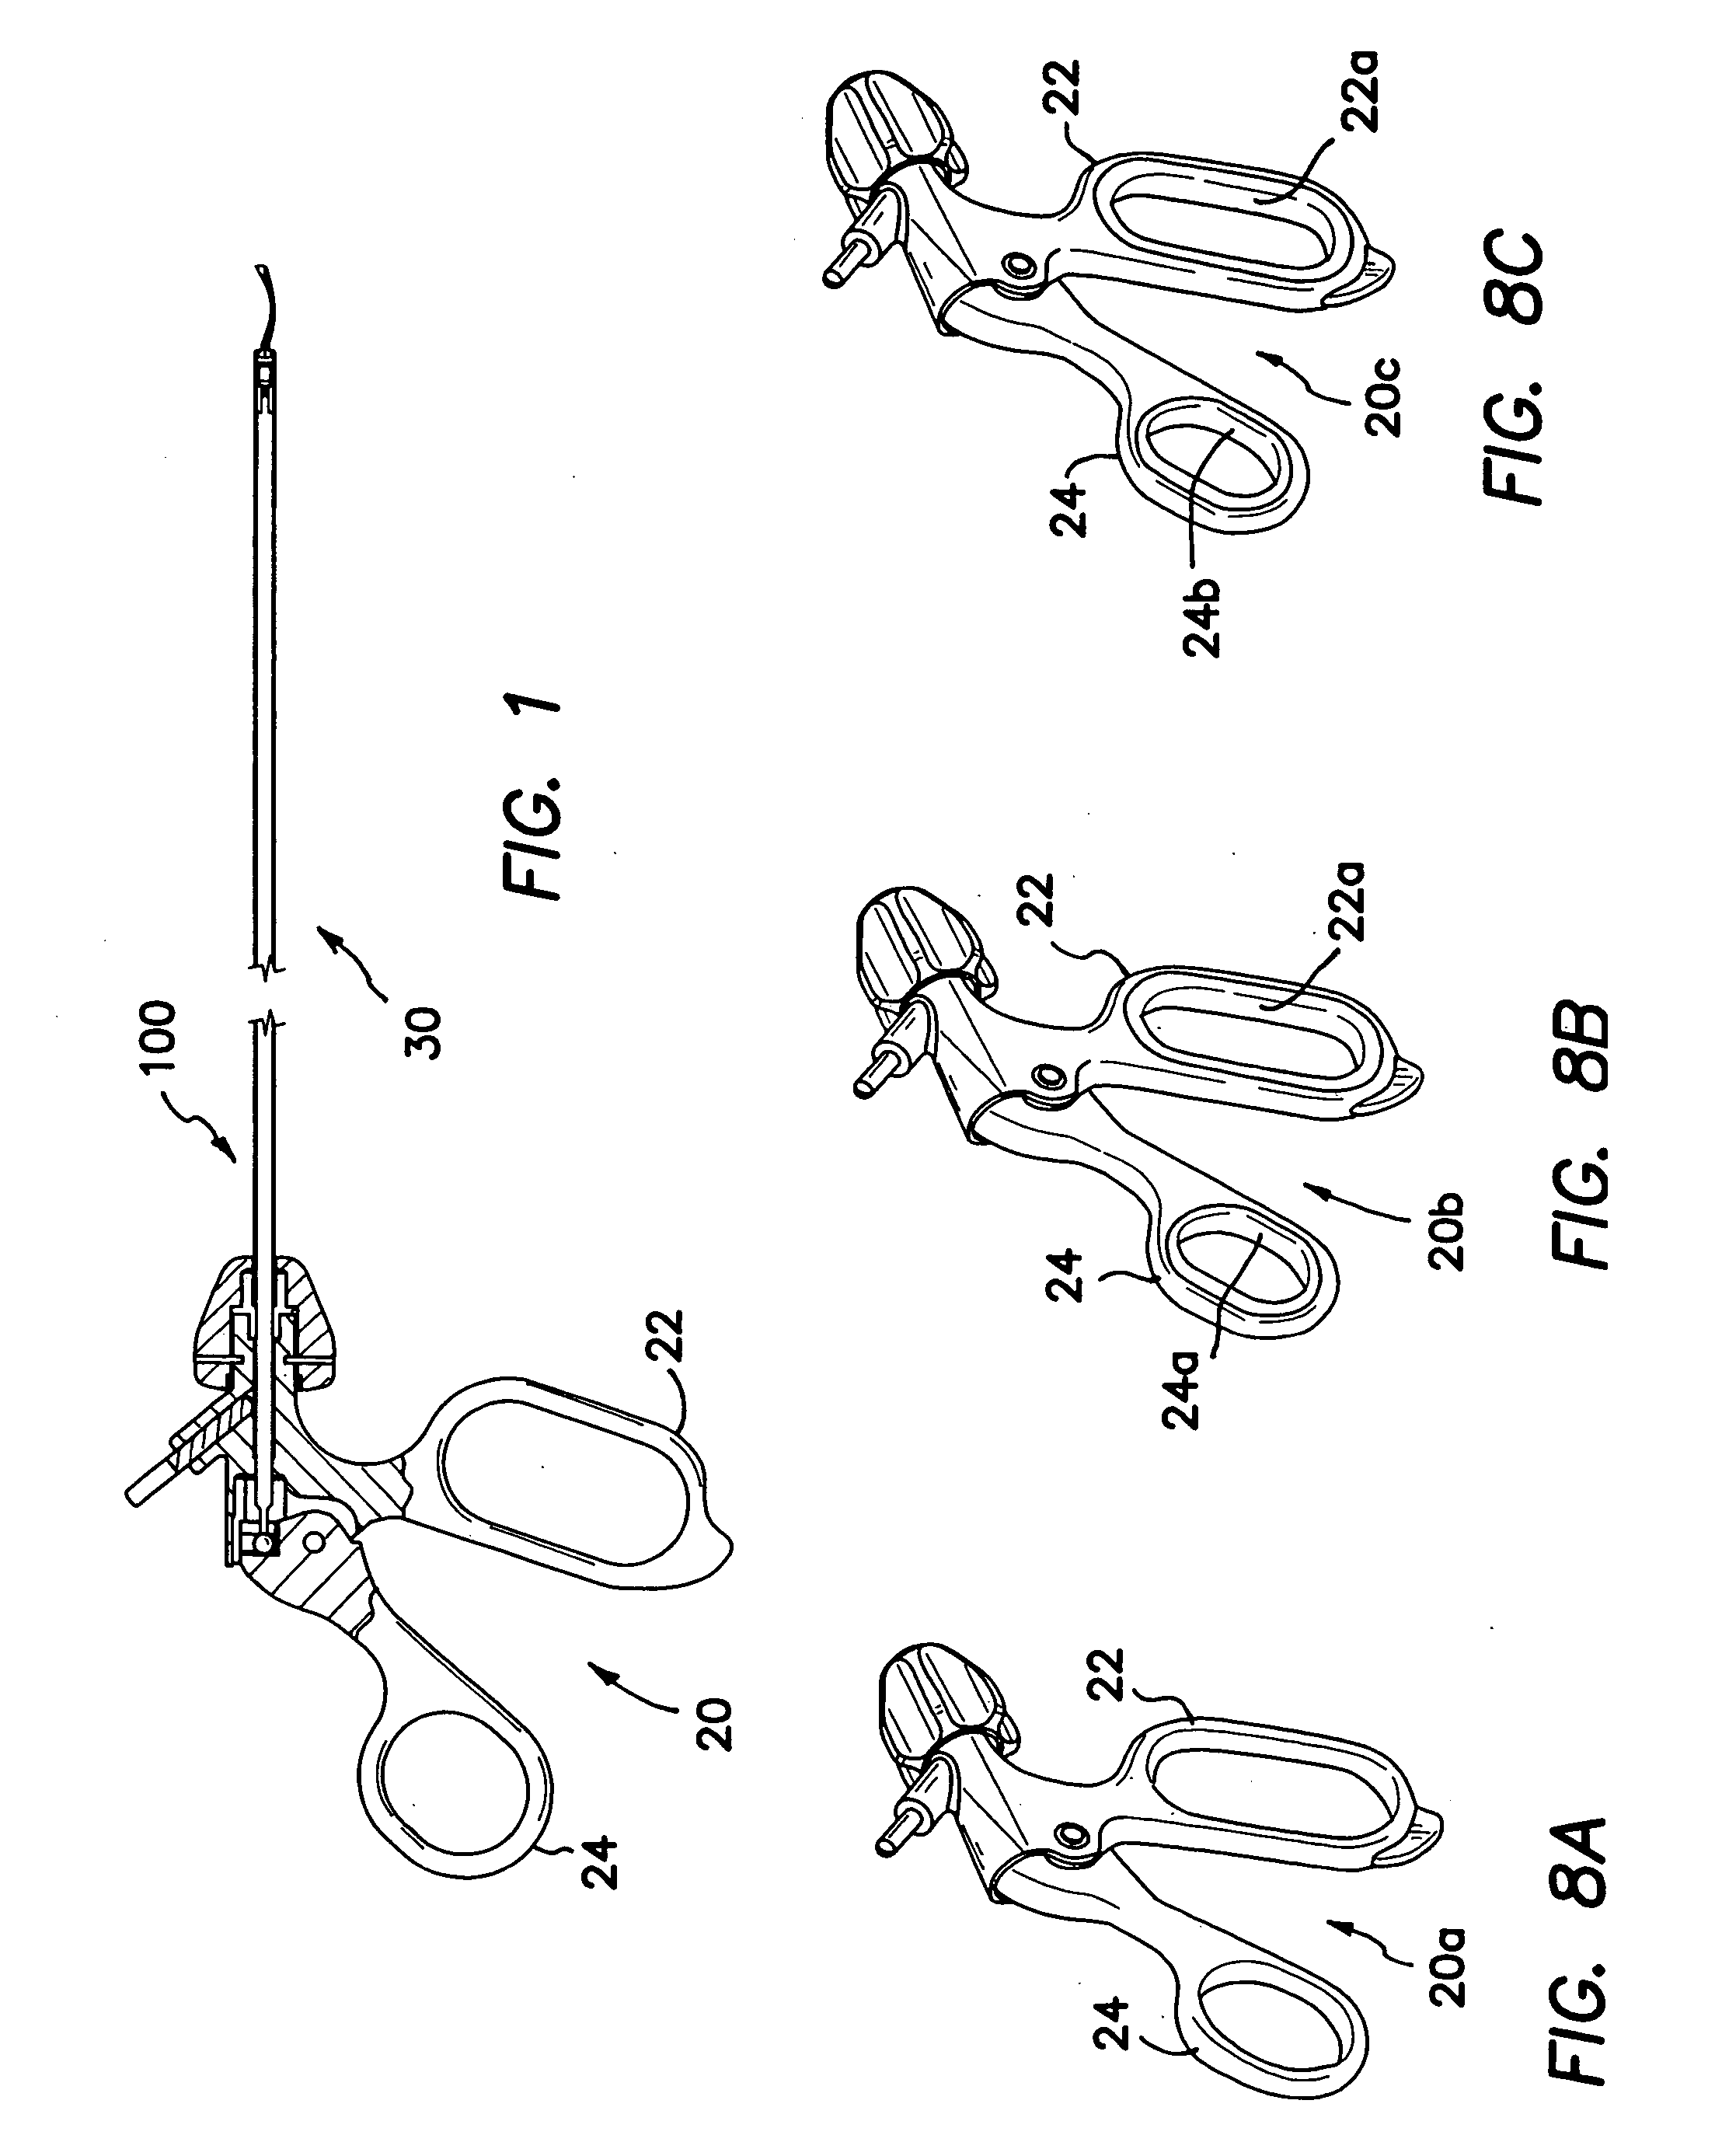 Disposable laparoscopic instrument